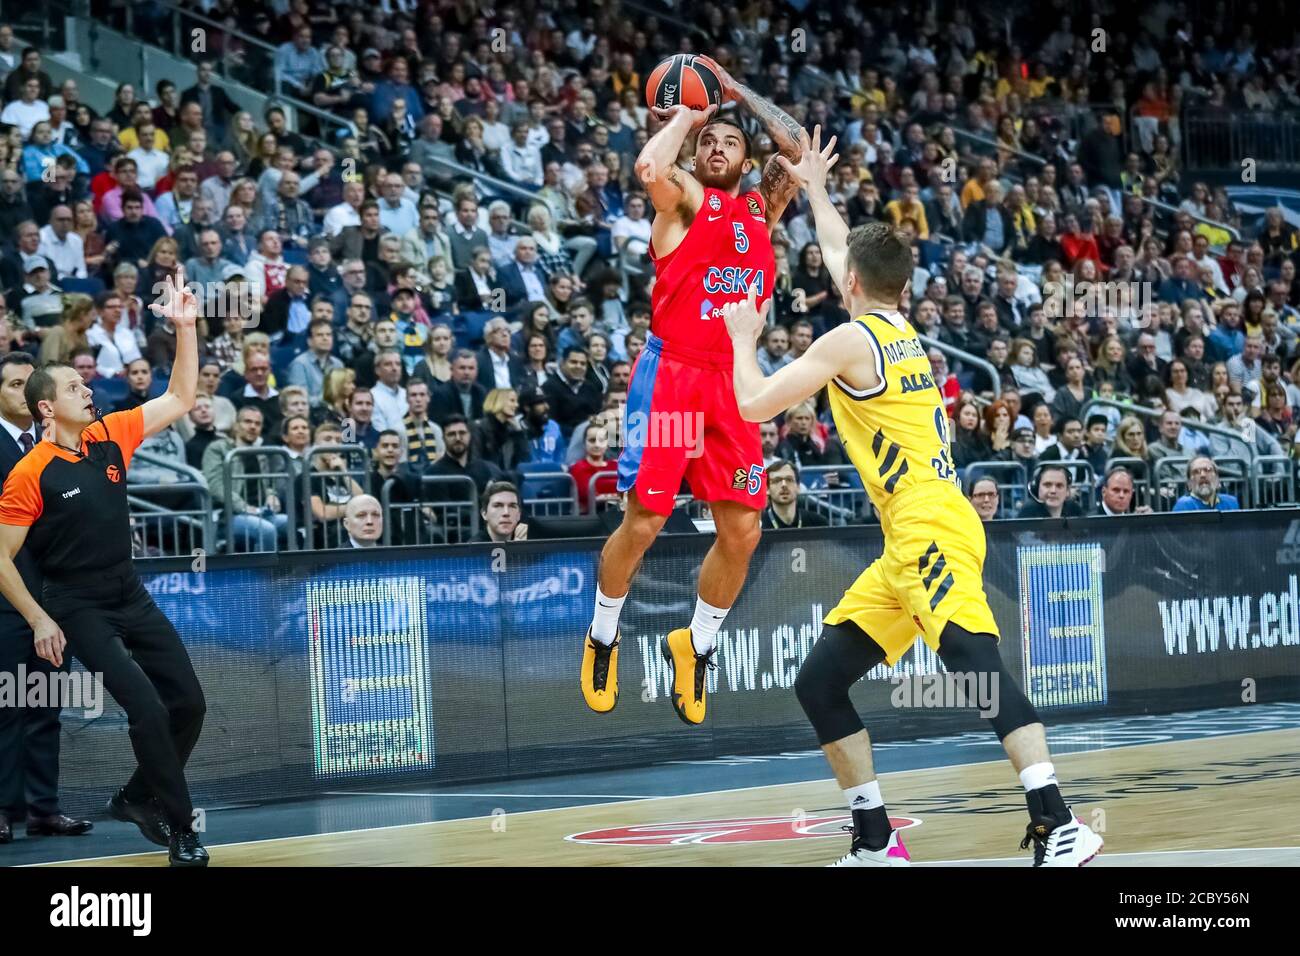 Berlin, Allemagne, 25 octobre 2019: Le joueur de basket-ball Mike James en action pendant le match de basket-ball EuroLeague entre Alba Berlin et CSKA Moscou Banque D'Images